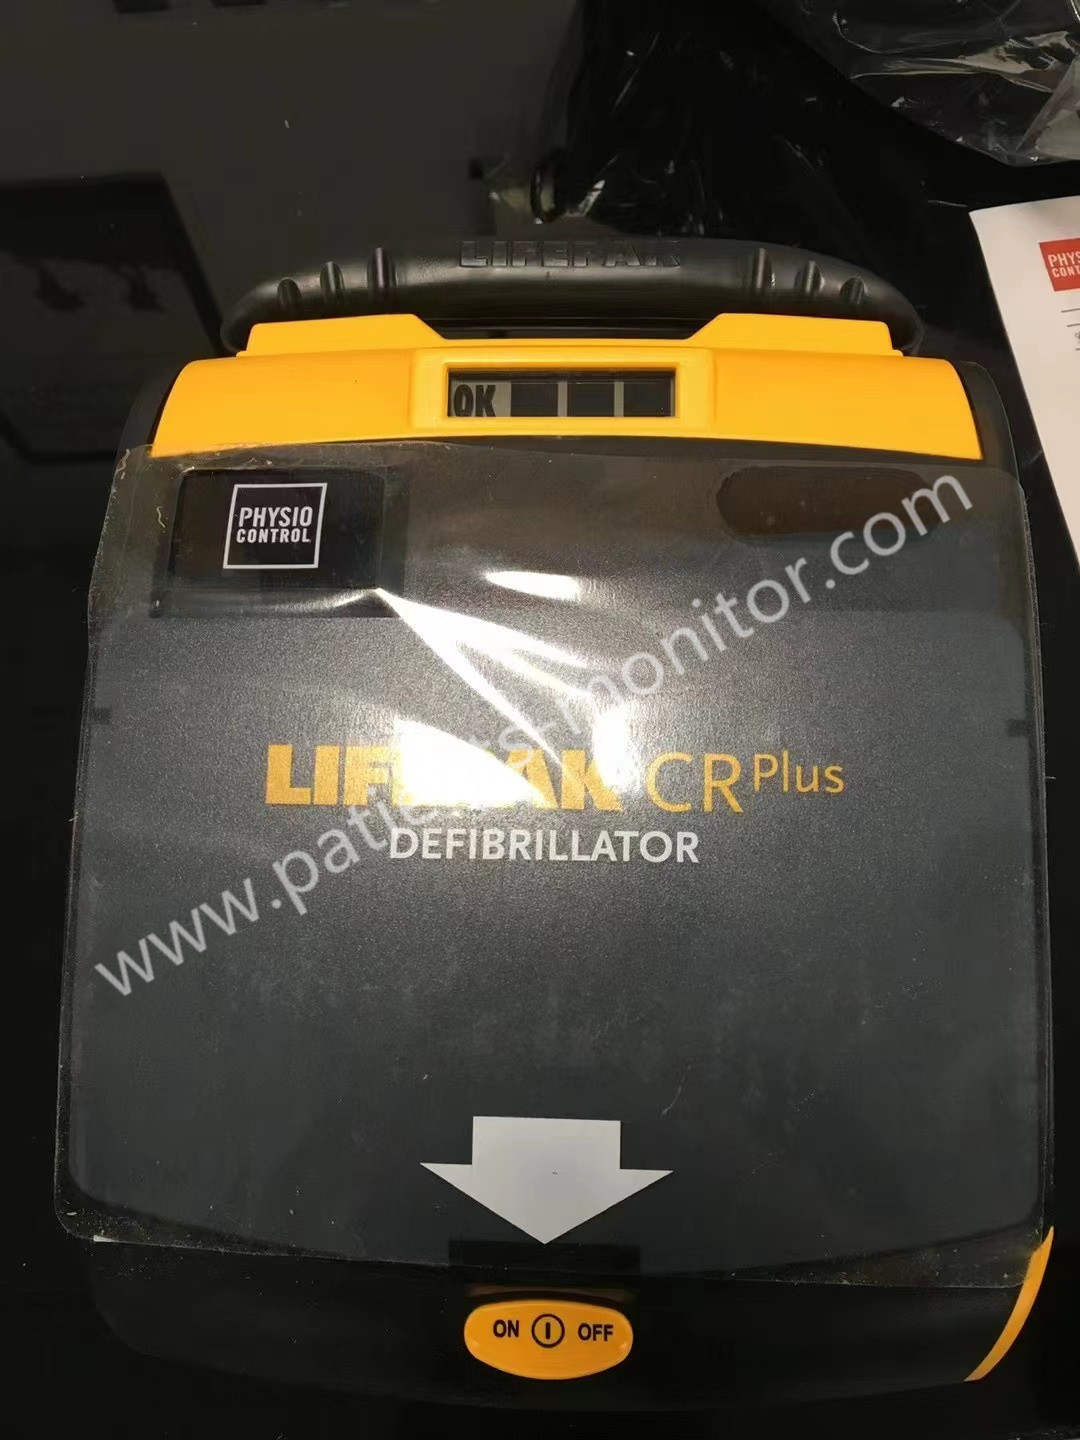 CR fisio de Lifepak del control de Med-tronic más el equipo del Defibrillator para el hospital